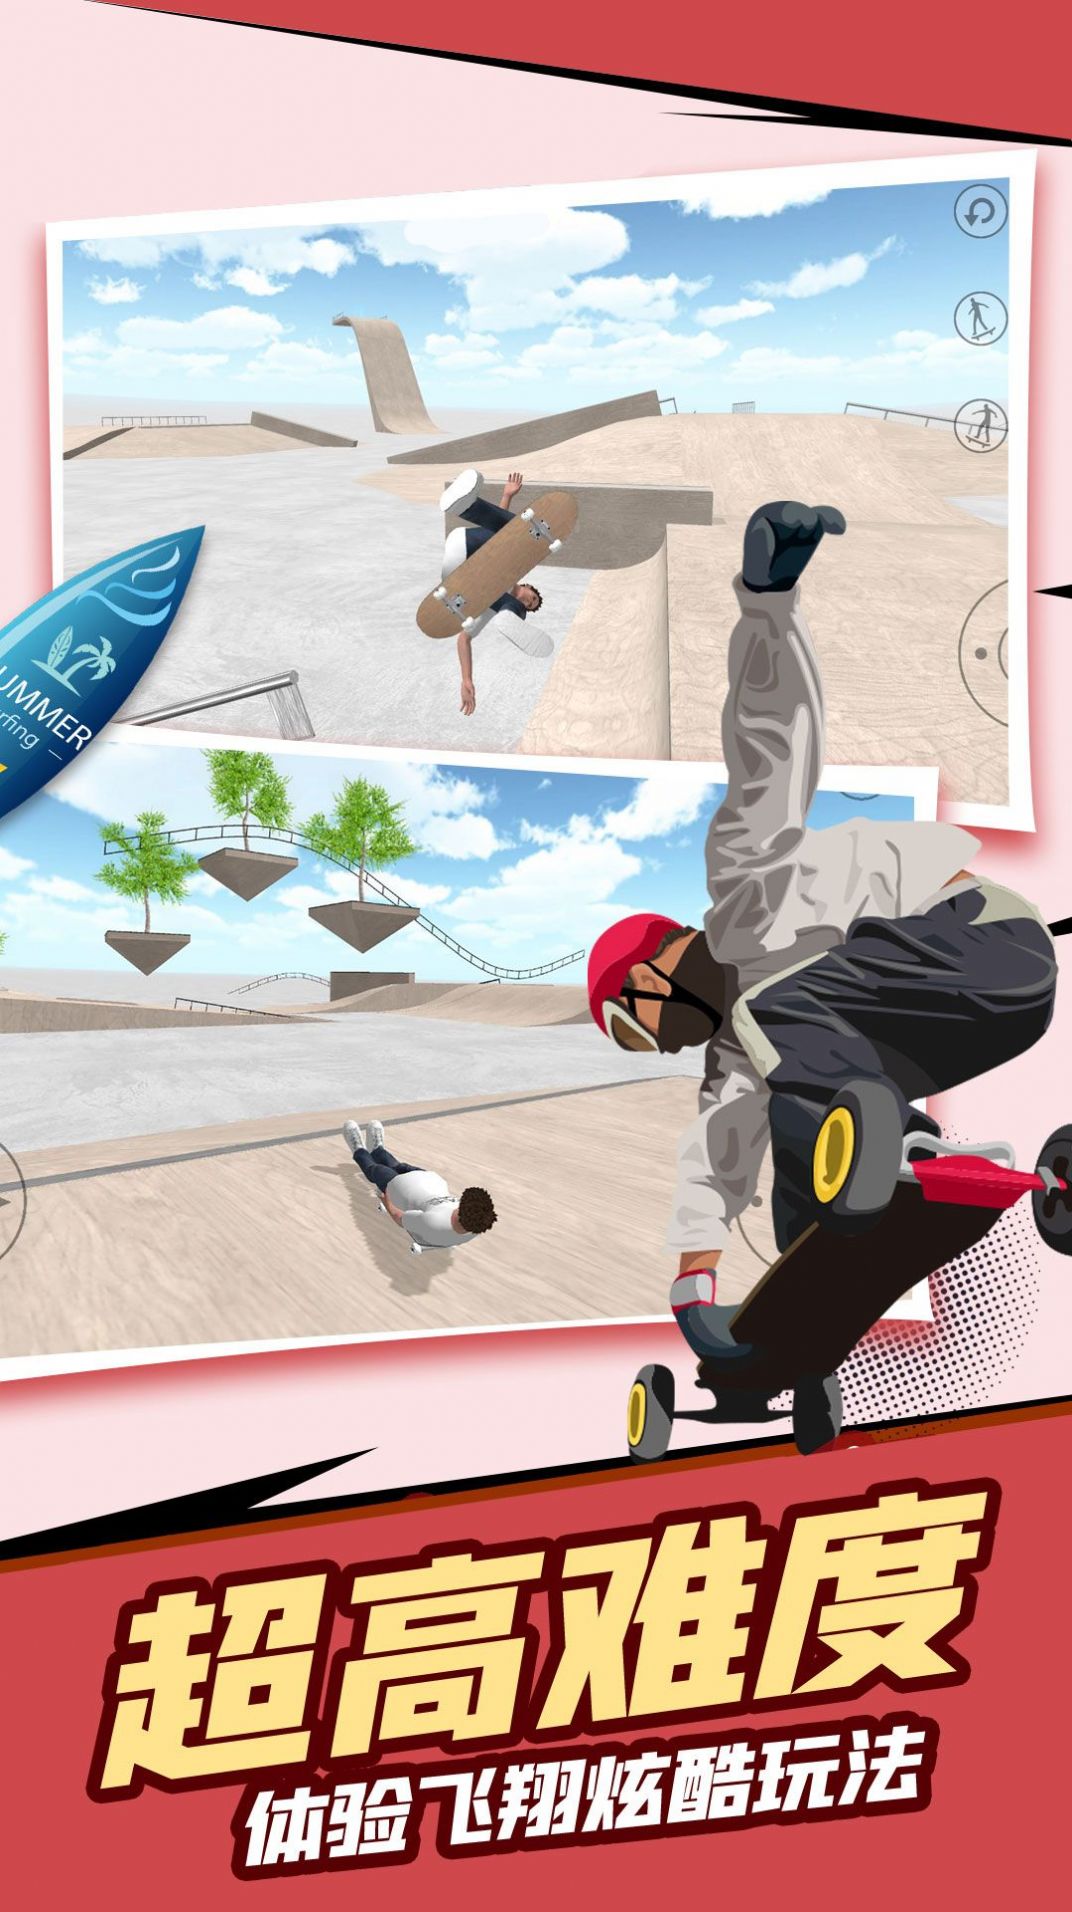 自由滑板模拟游戏官方版截图1: